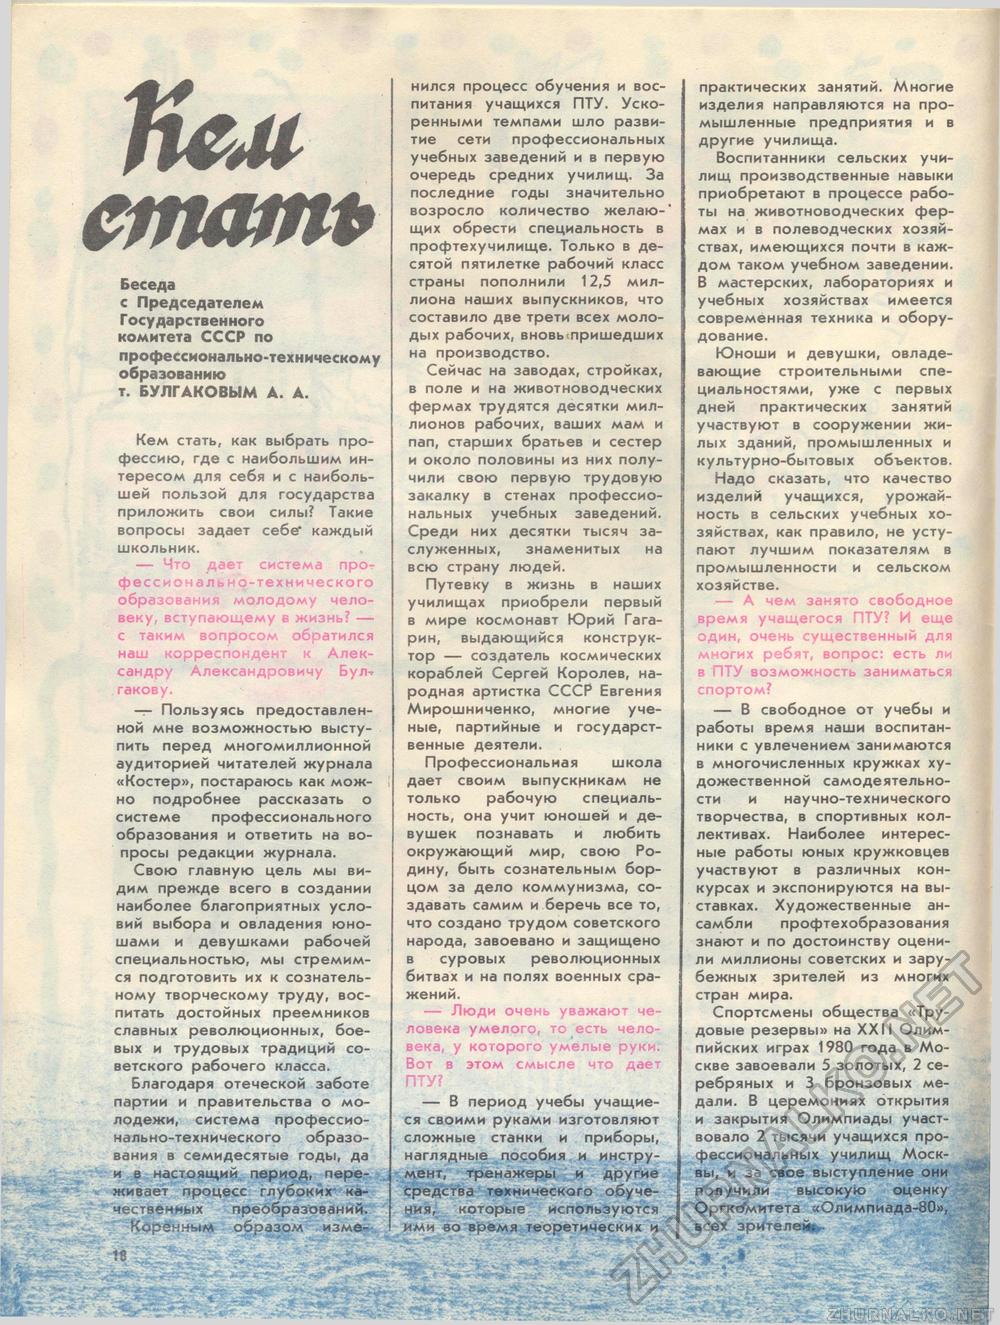  1982-01,  22